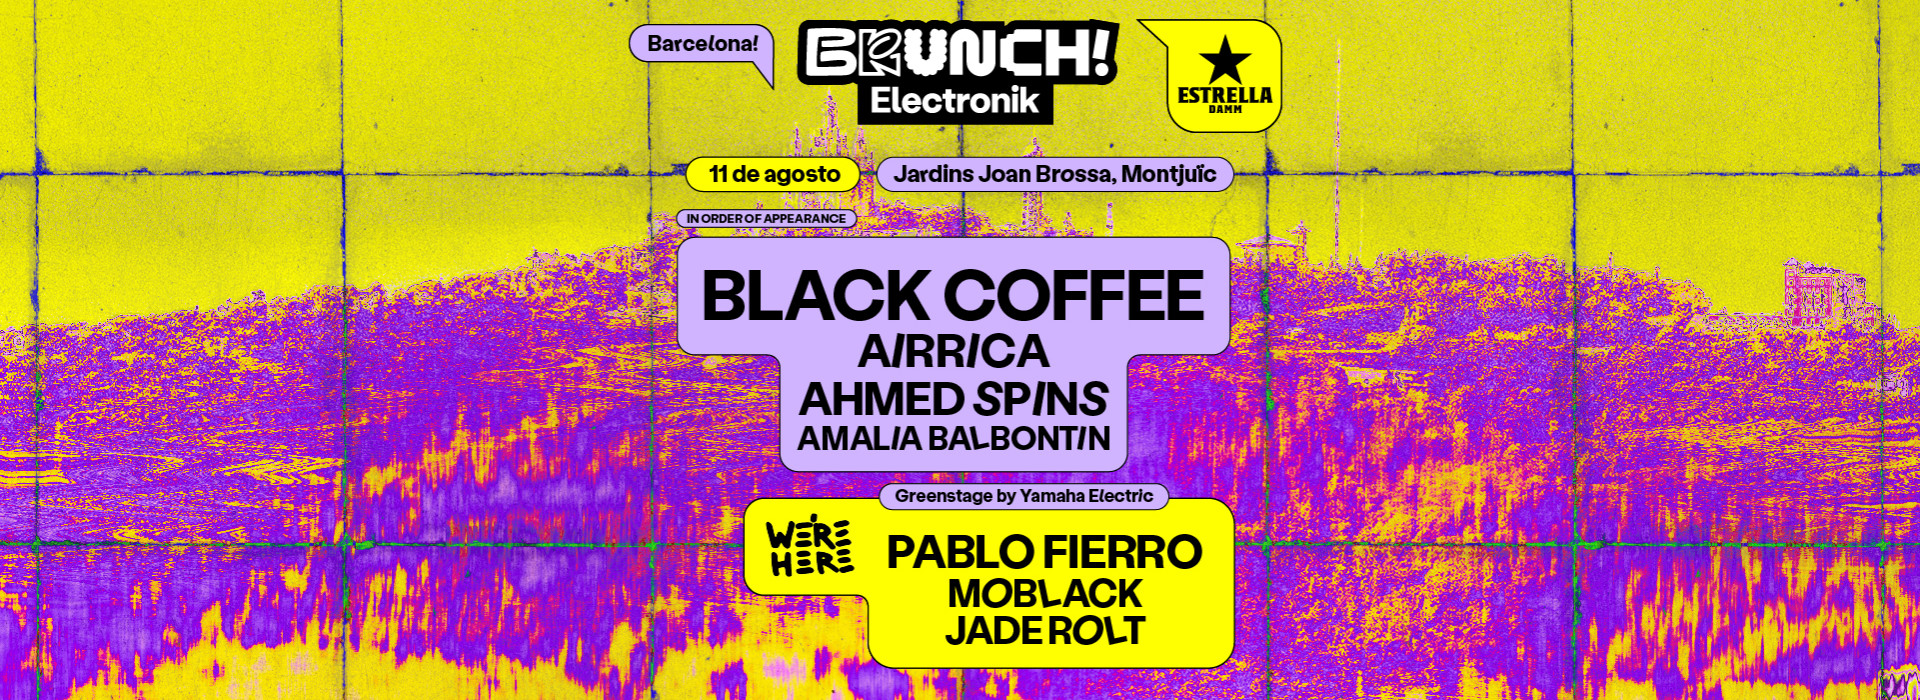 BRUNCH ELECTRONIK BARCELONA #BLACK COFFEE